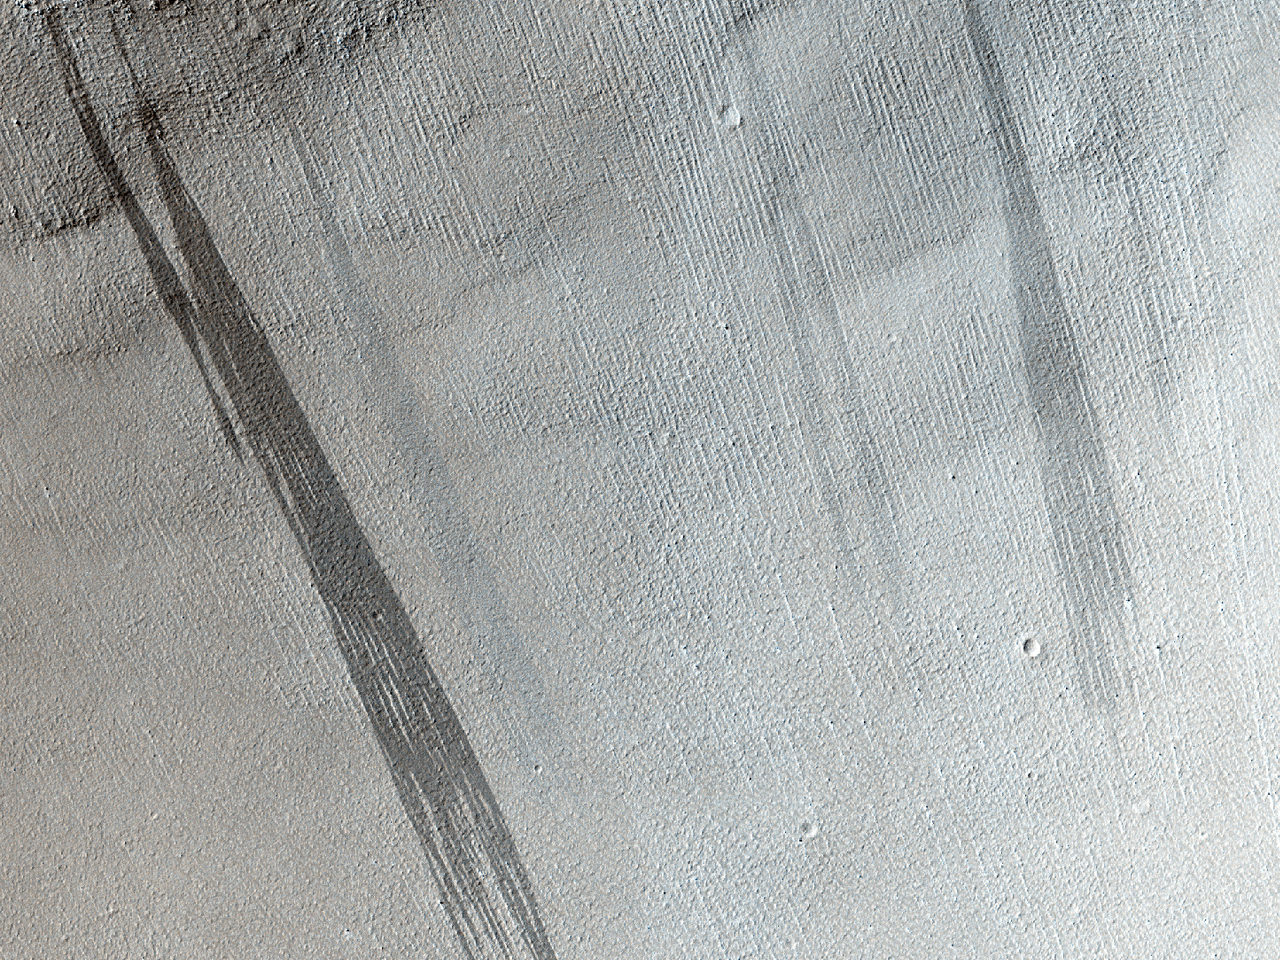 Dunkle, verblichene Streifen auf dem Hang eines Einschlagkraters im sdstlichen Arabia Terra